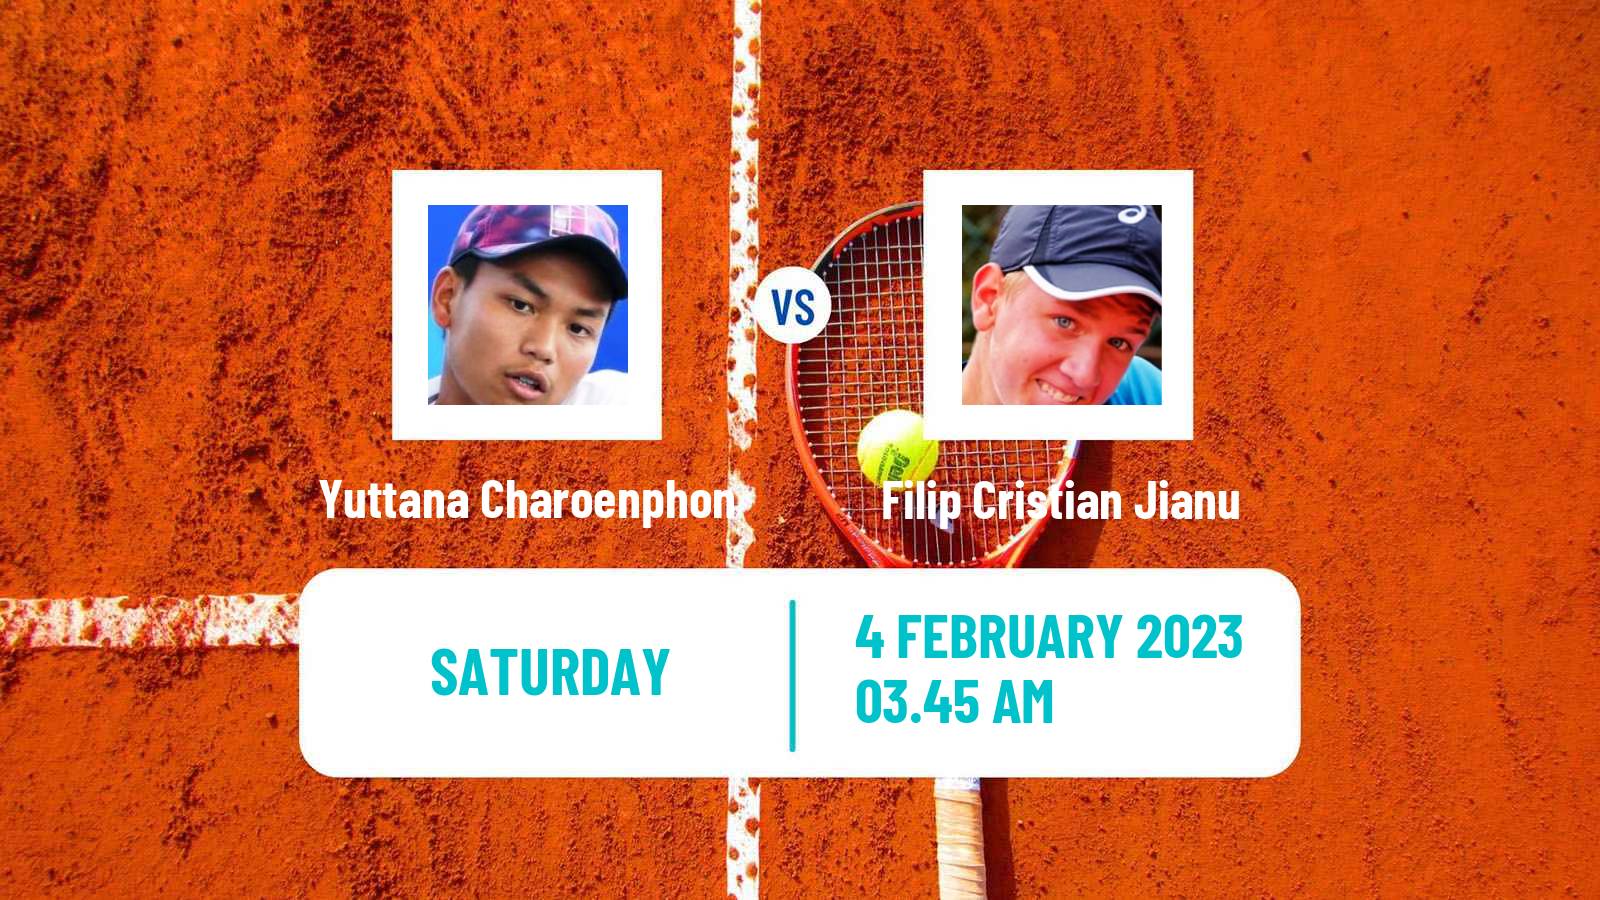 Tennis Davis Cup World Group I Yuttana Charoenphon - Filip Cristian Jianu